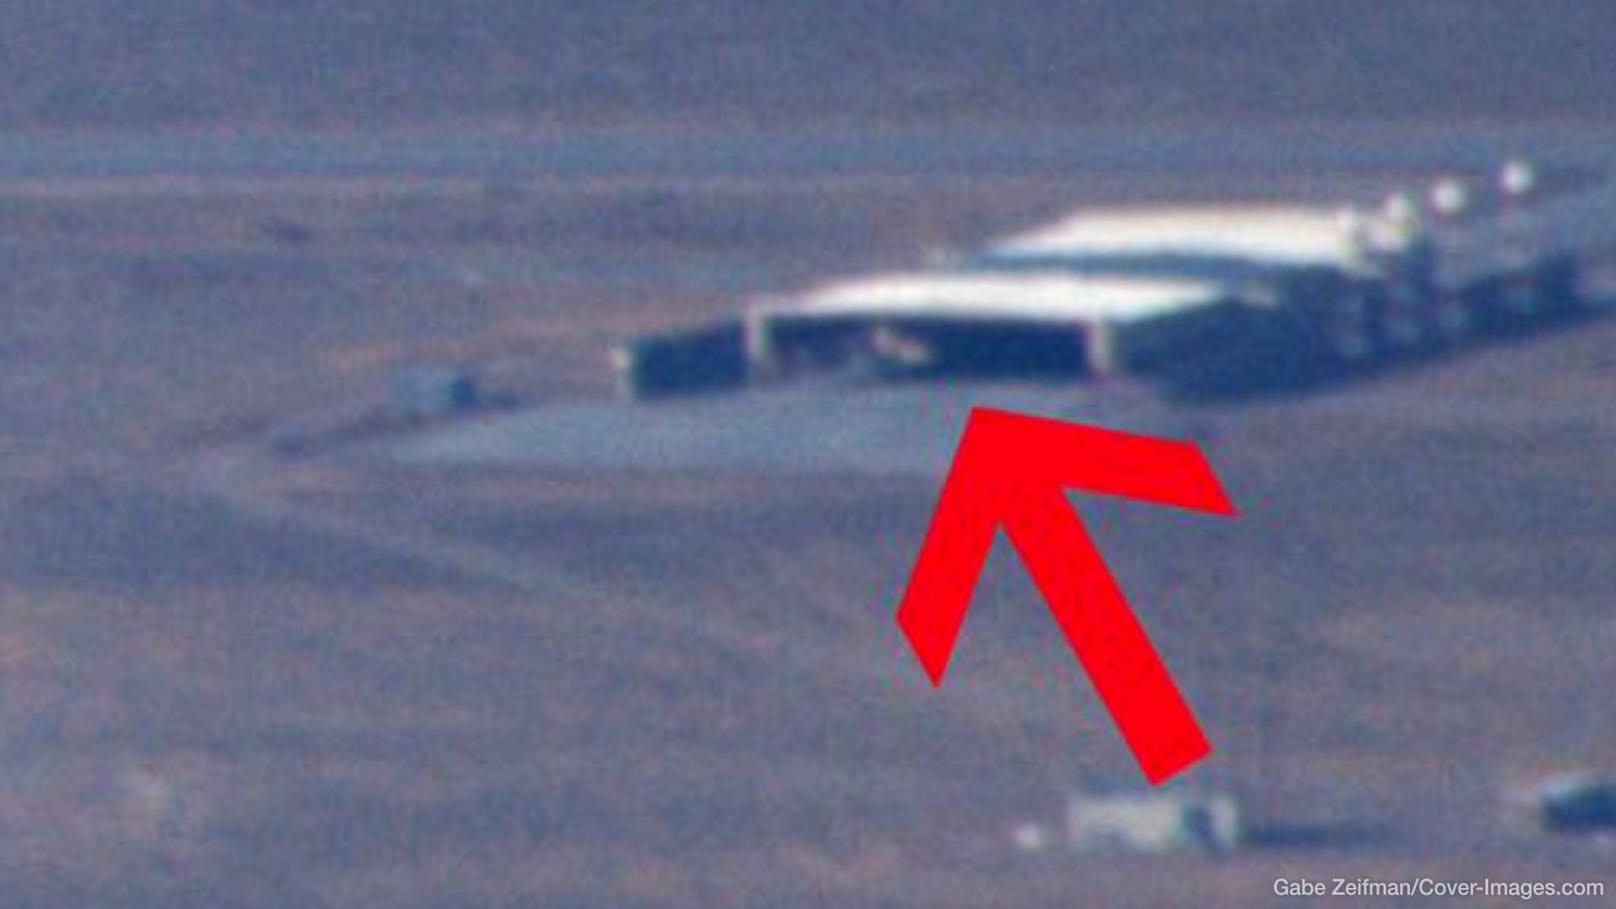 Der Pilot Gabe Zeifman teilte Aufnahmen, die er bei einem Flug über der Area 51 gemacht hatte. Darunter ist ein seltsames Objekt.